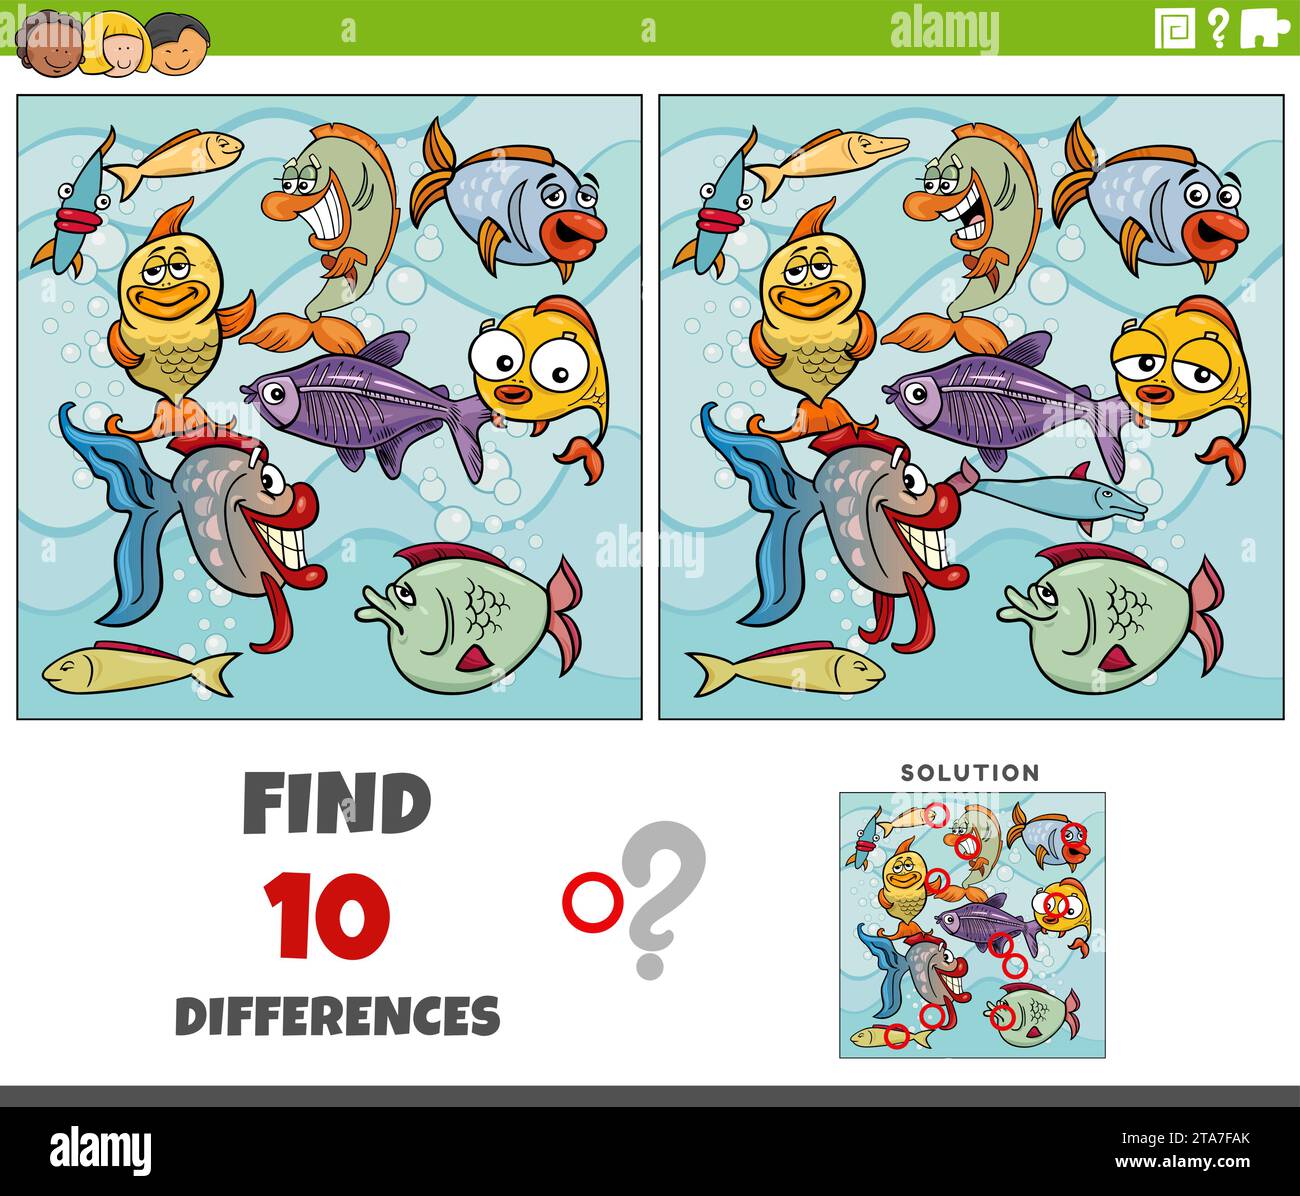 Illustration de dessin animé de trouver les différences entre les images de l'activité éducative avec le groupe de personnages d'animaux de poisson Illustration de Vecteur